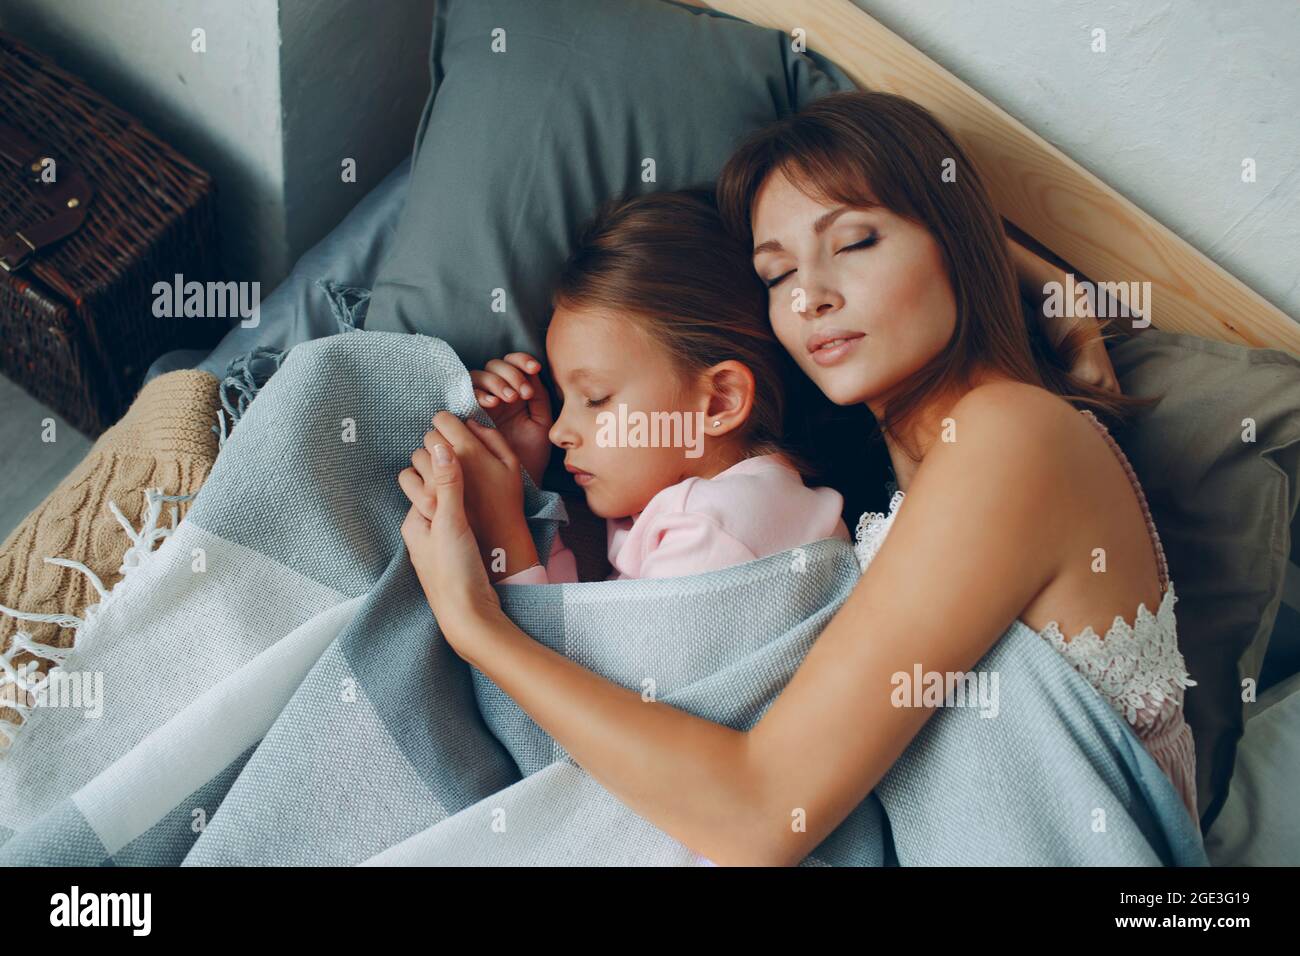 La mère dorment en s'embrassant avec sa petite fille. Famille parent unique jour de mère et bonne nuit concept. Banque D'Images